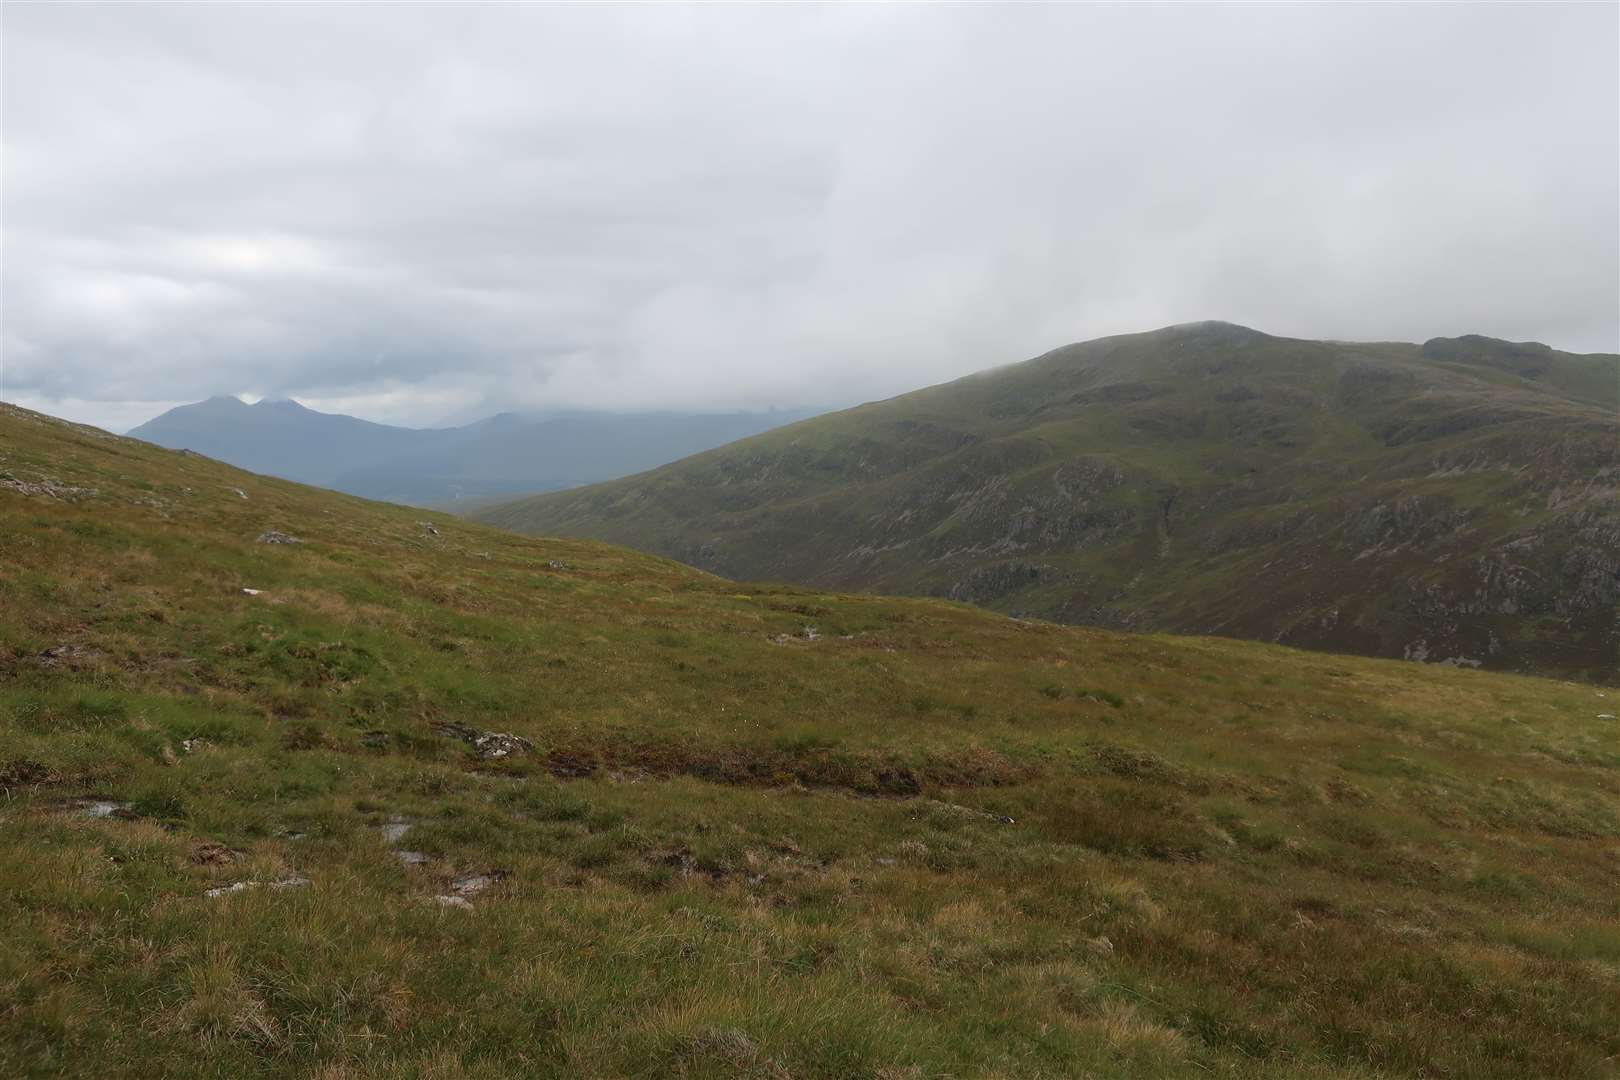 Beinn Teallach from the descent towards the Tom Mor bealach.